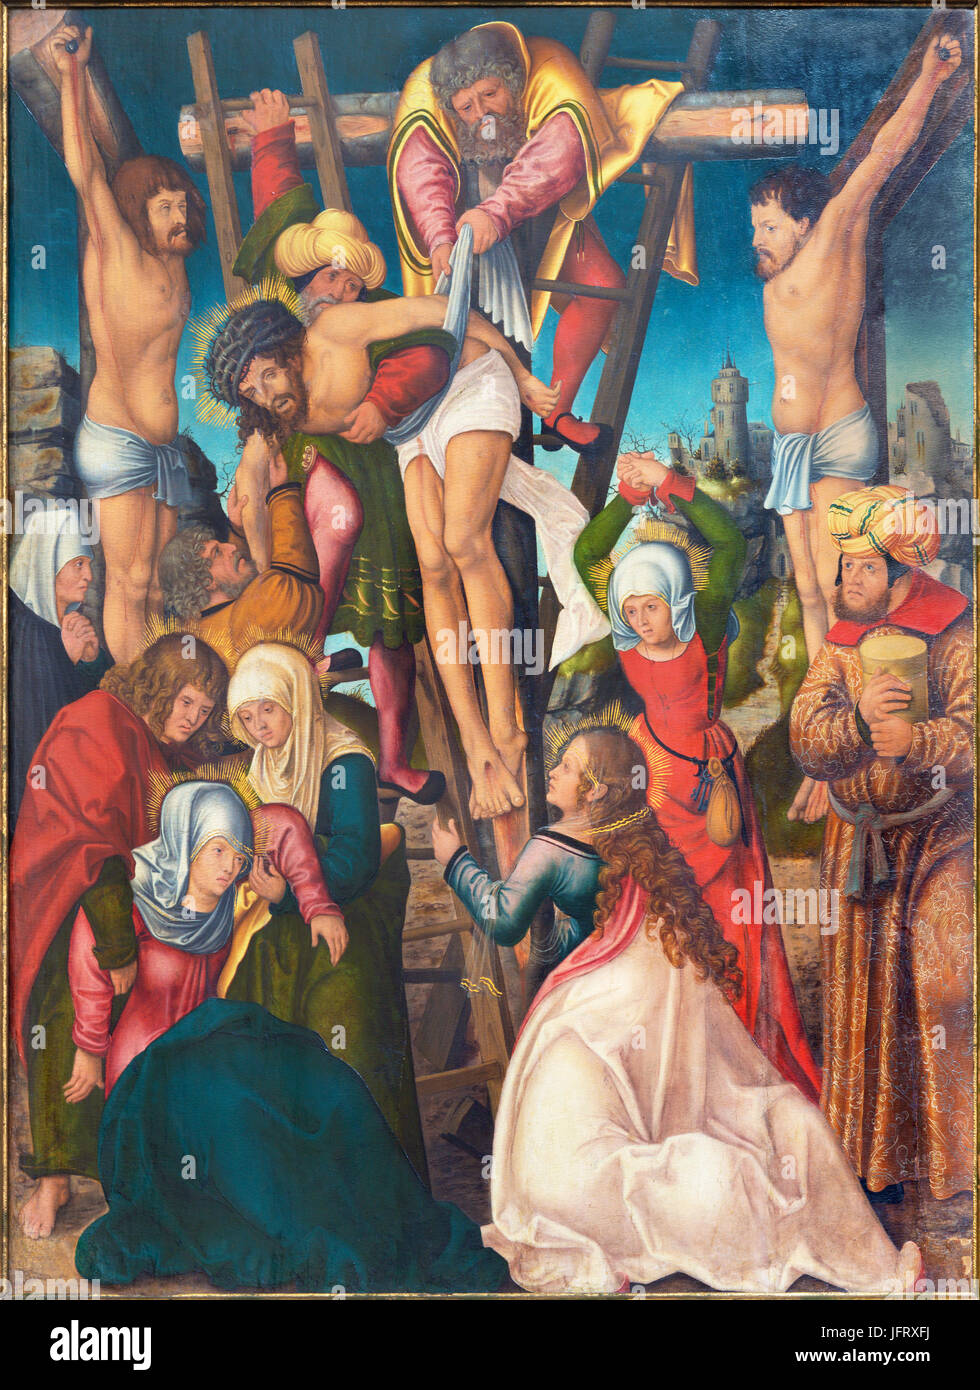 BERLIN, Deutschland, Februar - 16, 2017: Das Gemälde der Ablagerung des Kreuzes in der Kirche Marienkirche von unbekannten Künstler des 16. Jhdt. Stockfoto